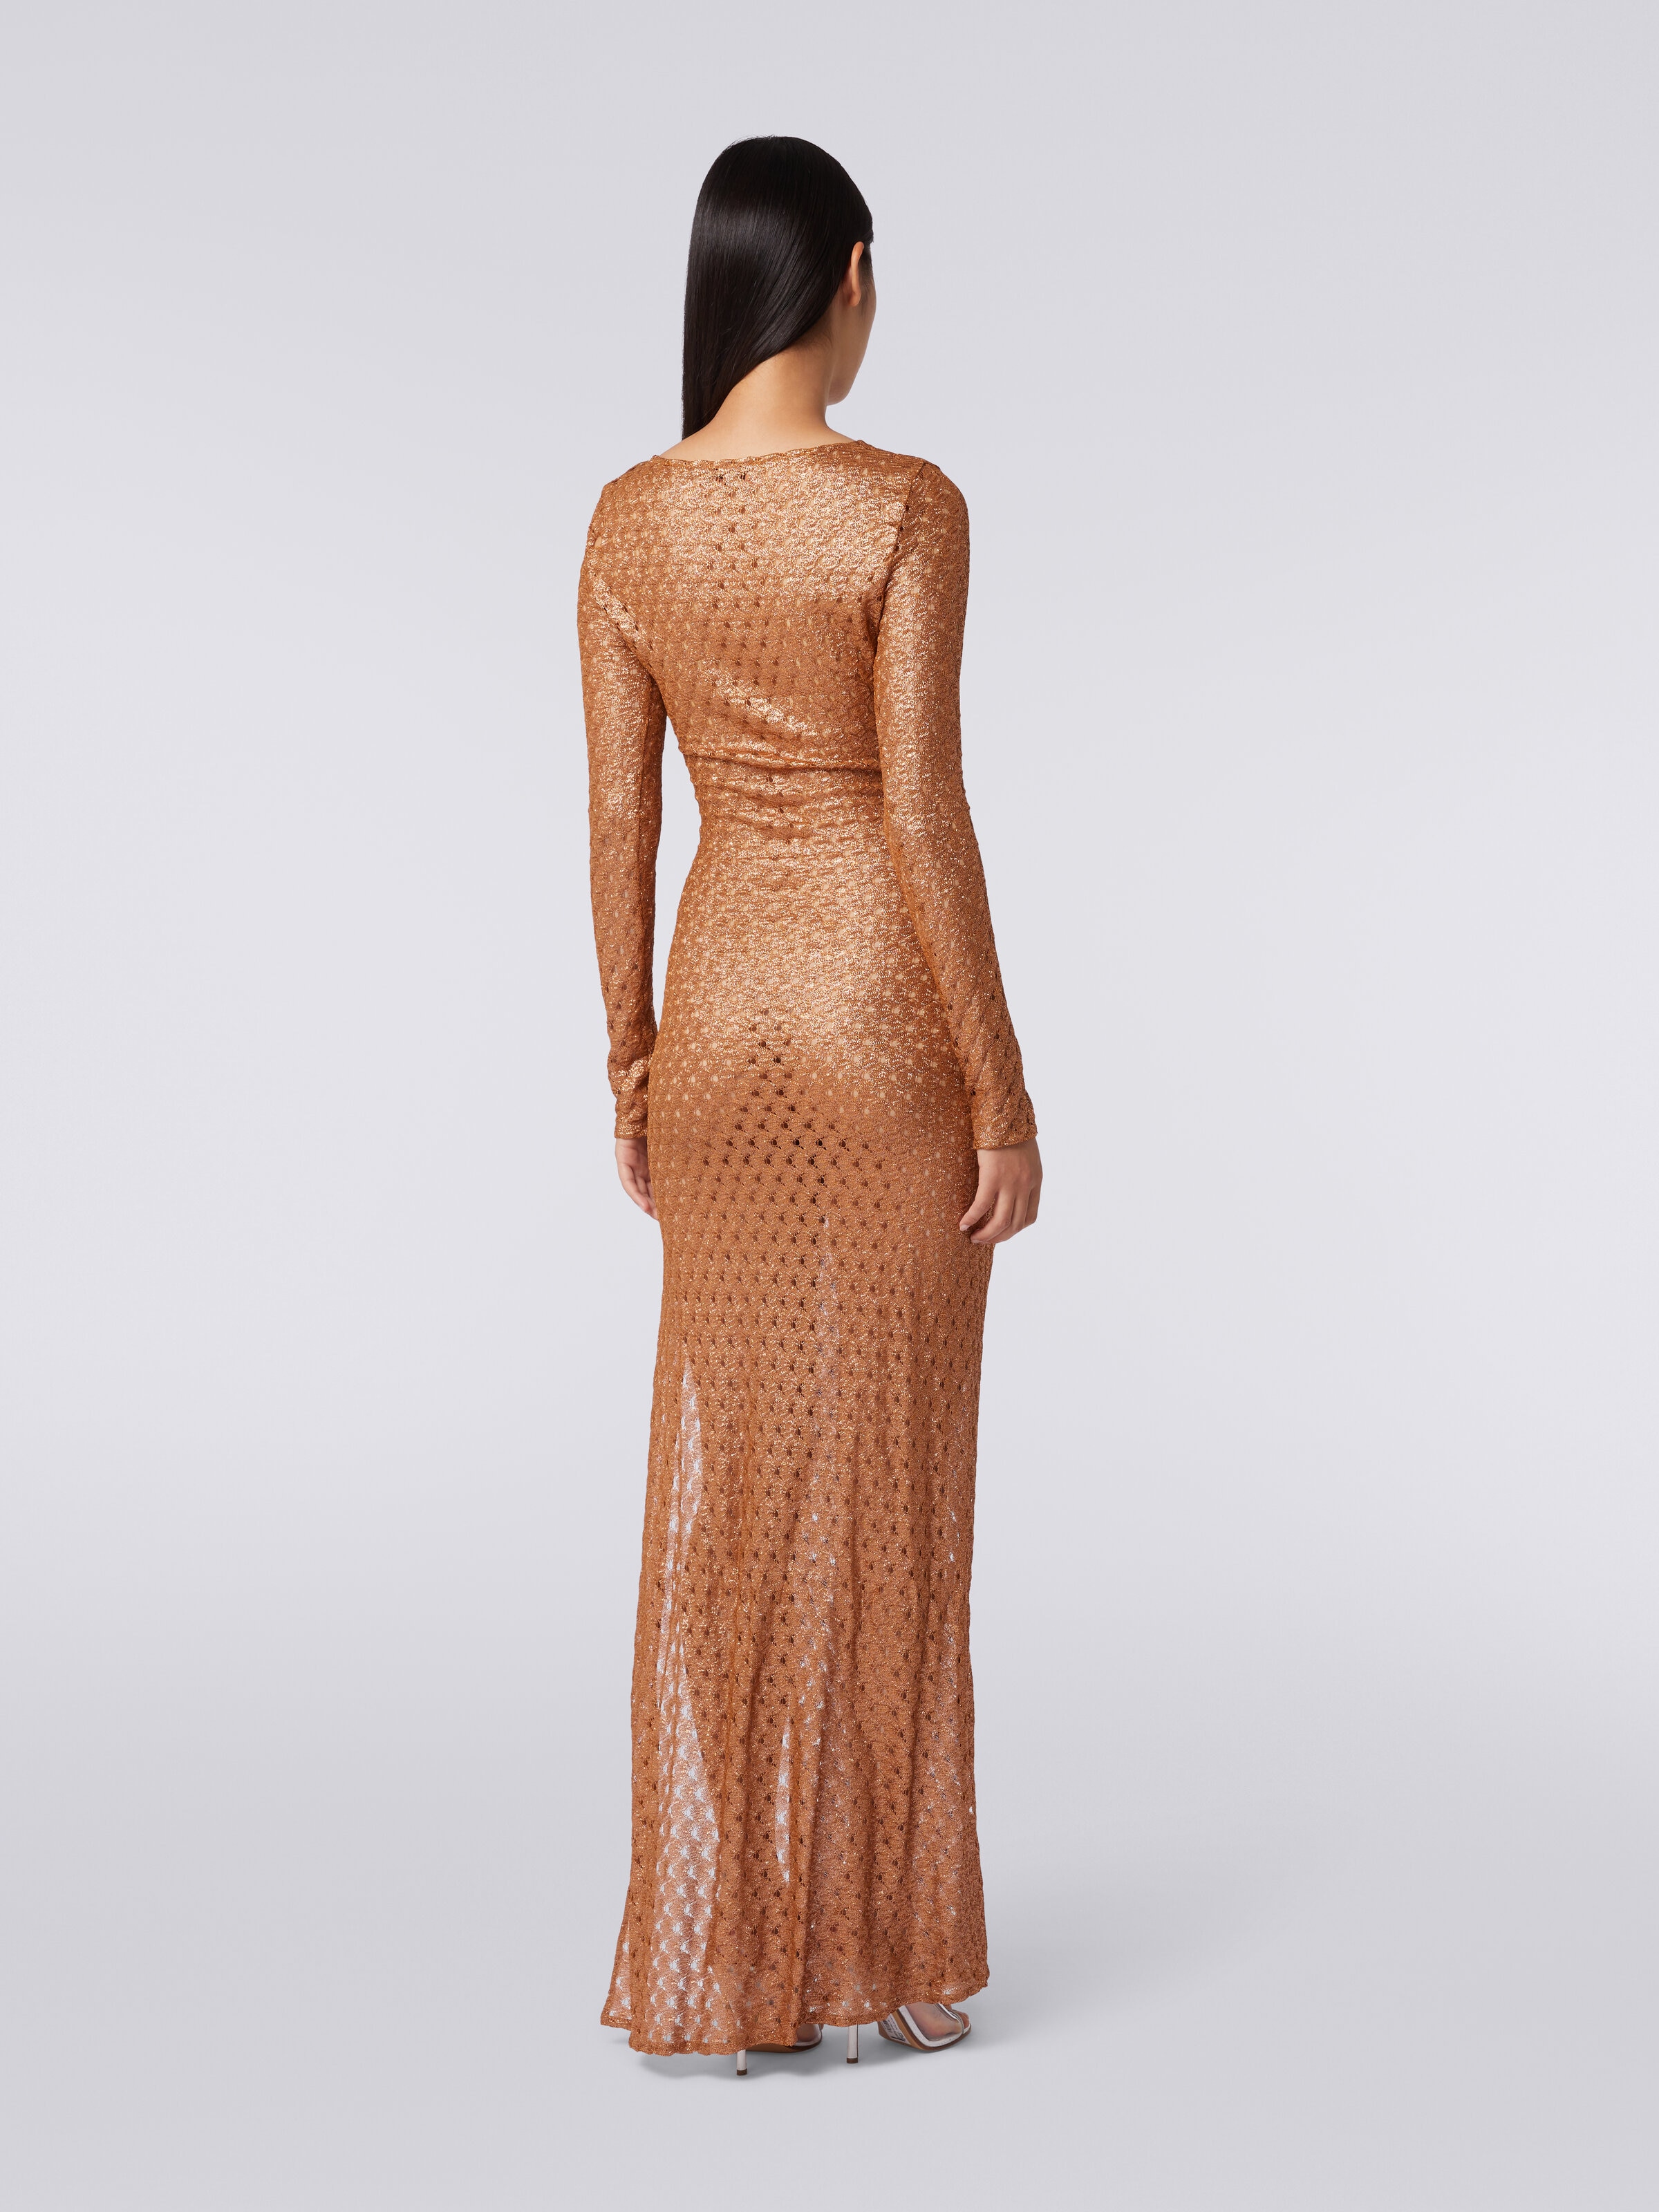 Langes Kleid in Spitzenoptik mit V-Ausschnitt und Applikationen, Braun - 3